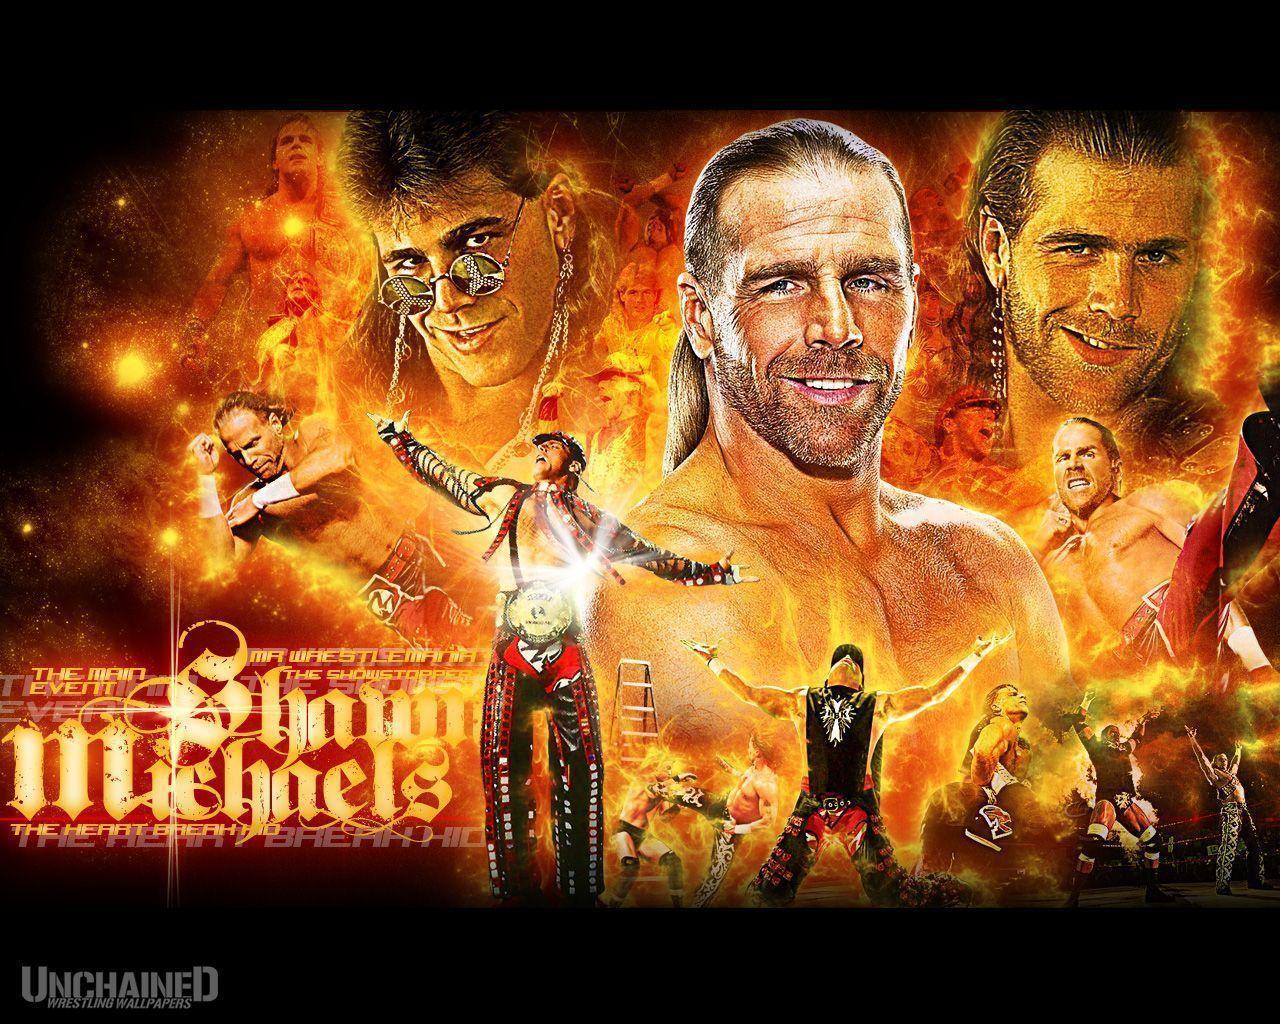 WWE Shawn Michaels "Legendary" Wallpaper Unchained WWE.com WWE